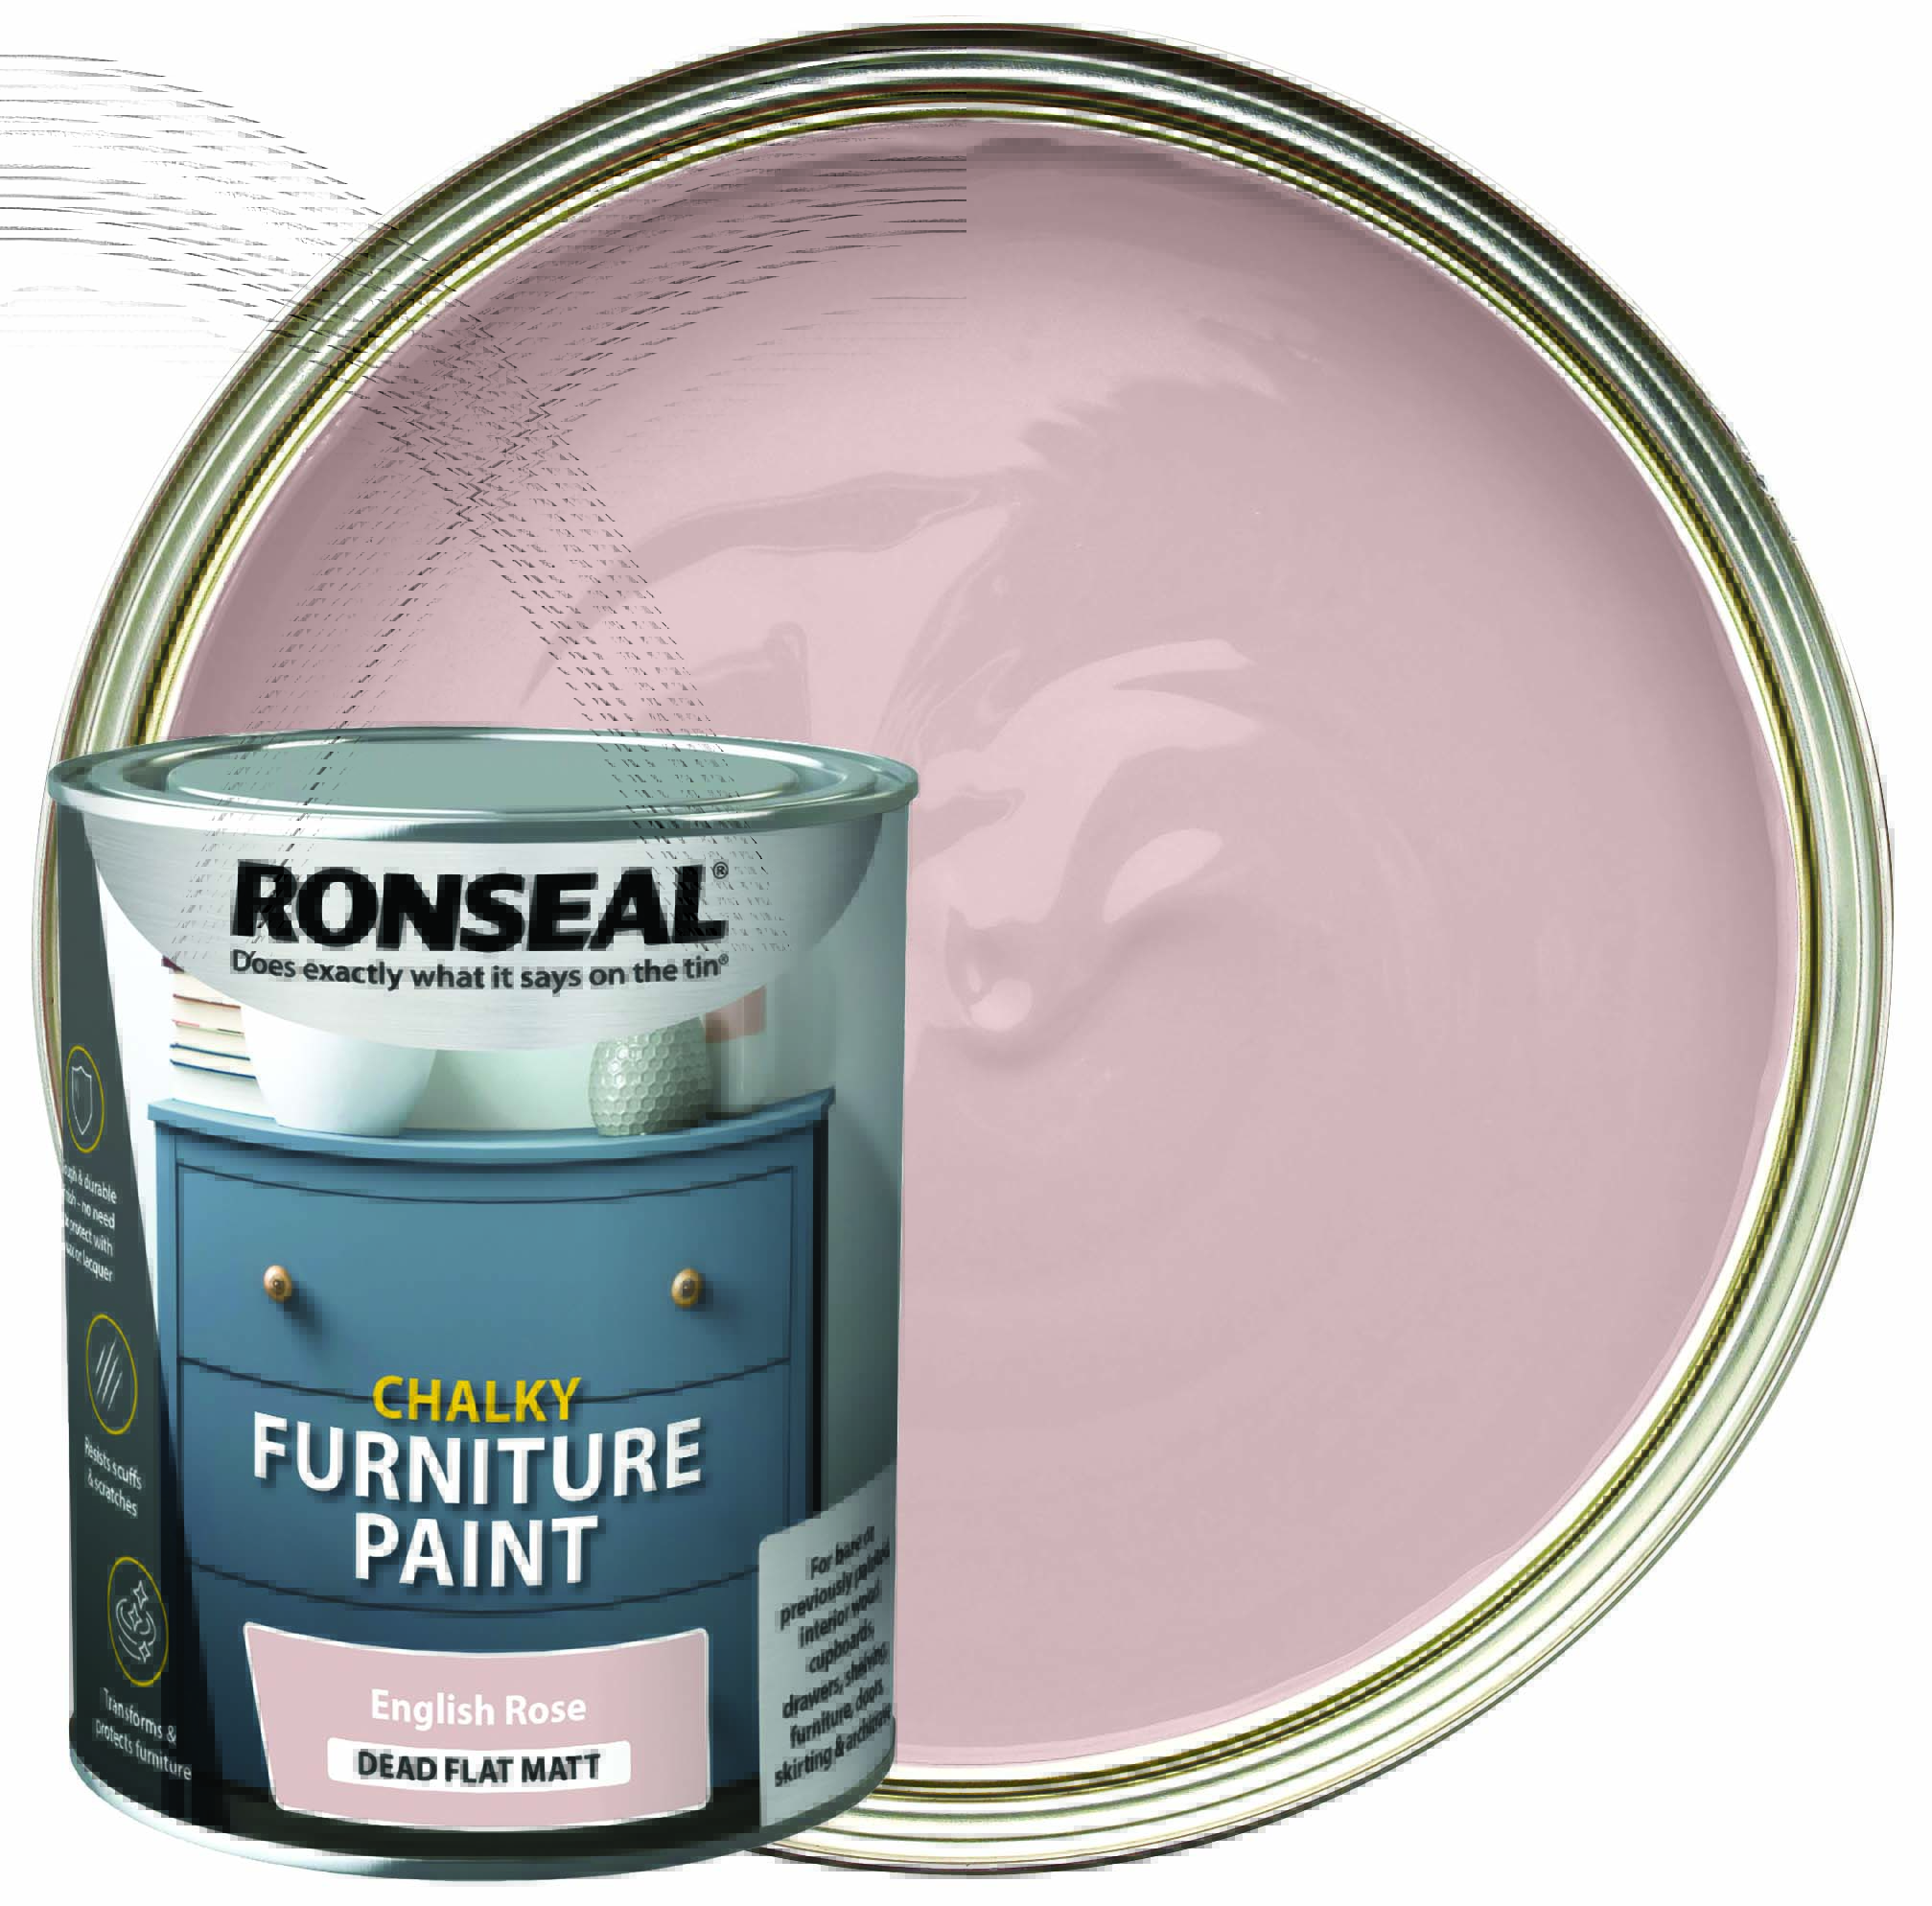 Image of Ronseal Furniture Paint - English Rose 750ml